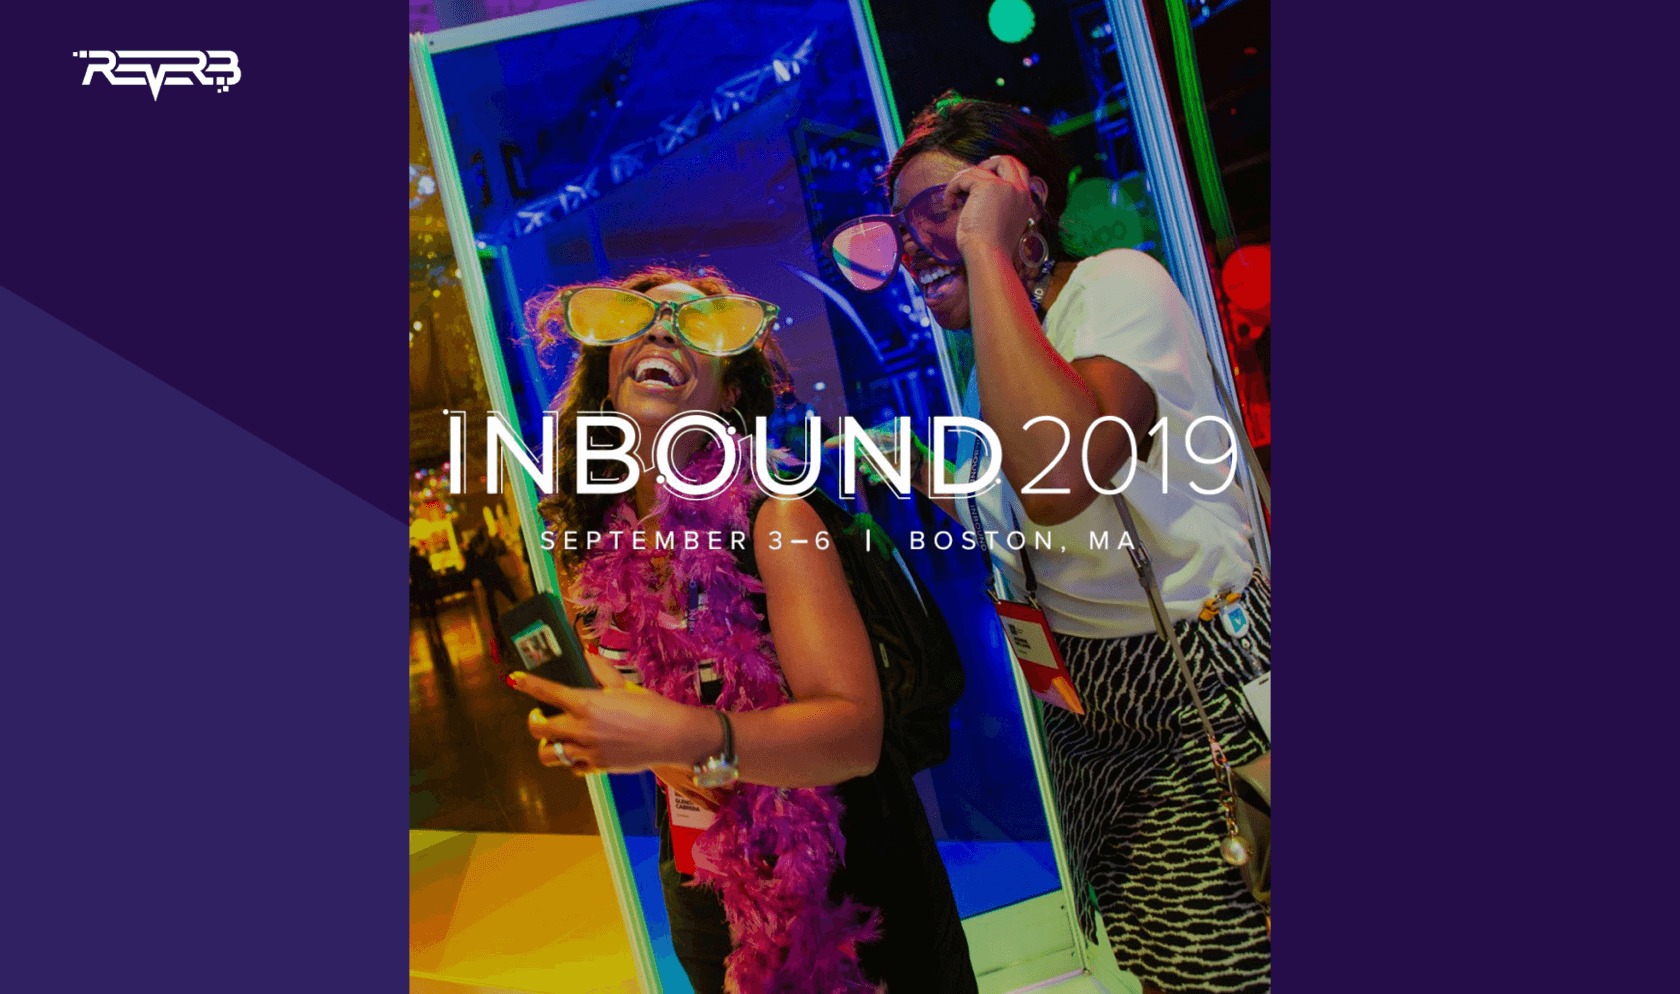 Inbound 2019